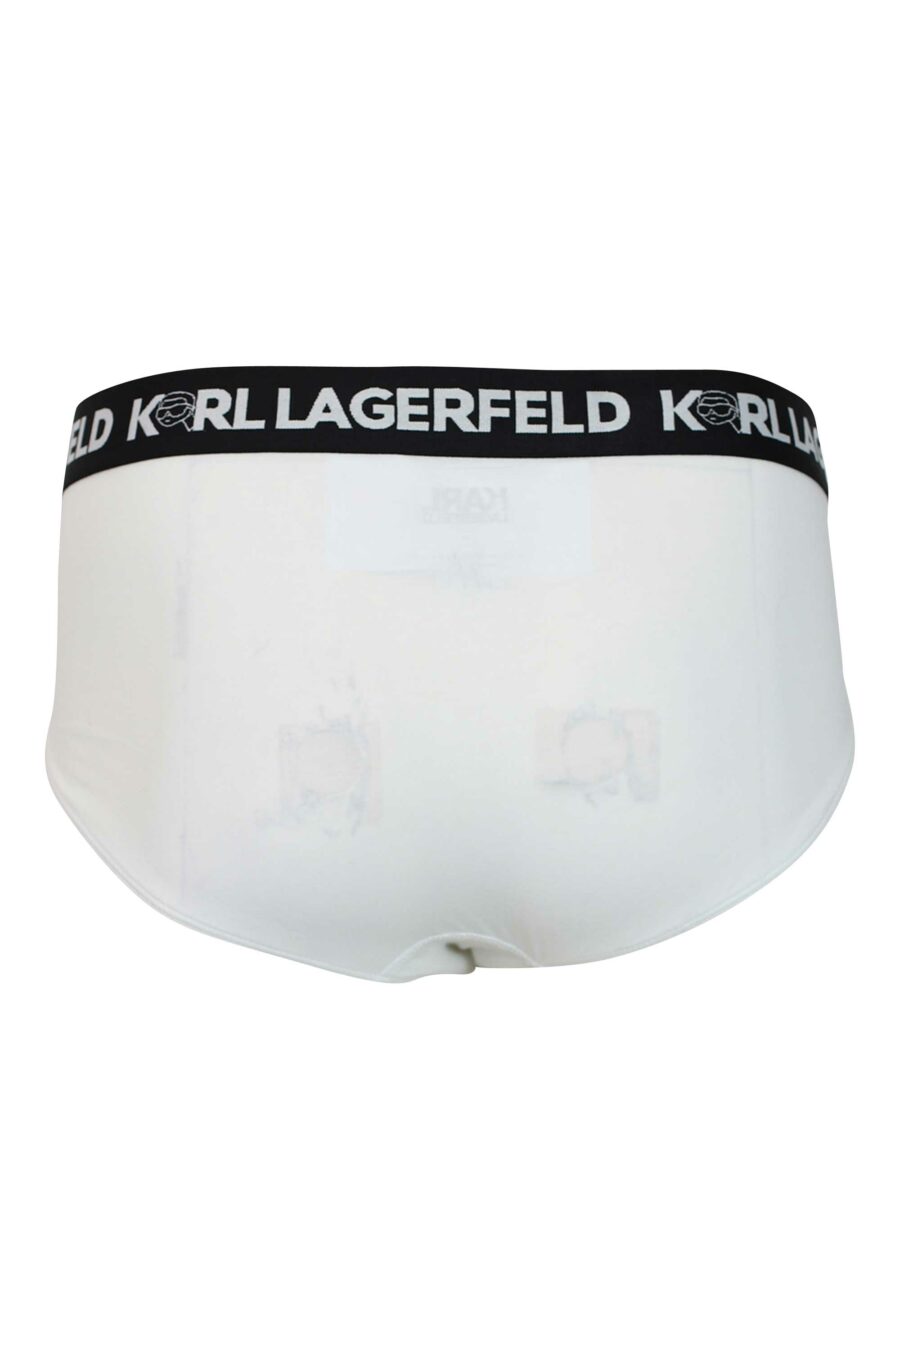 Dreierpack schwarzer und weißer Slips mit "karl"-Logo am Bund - 8720744054627 2